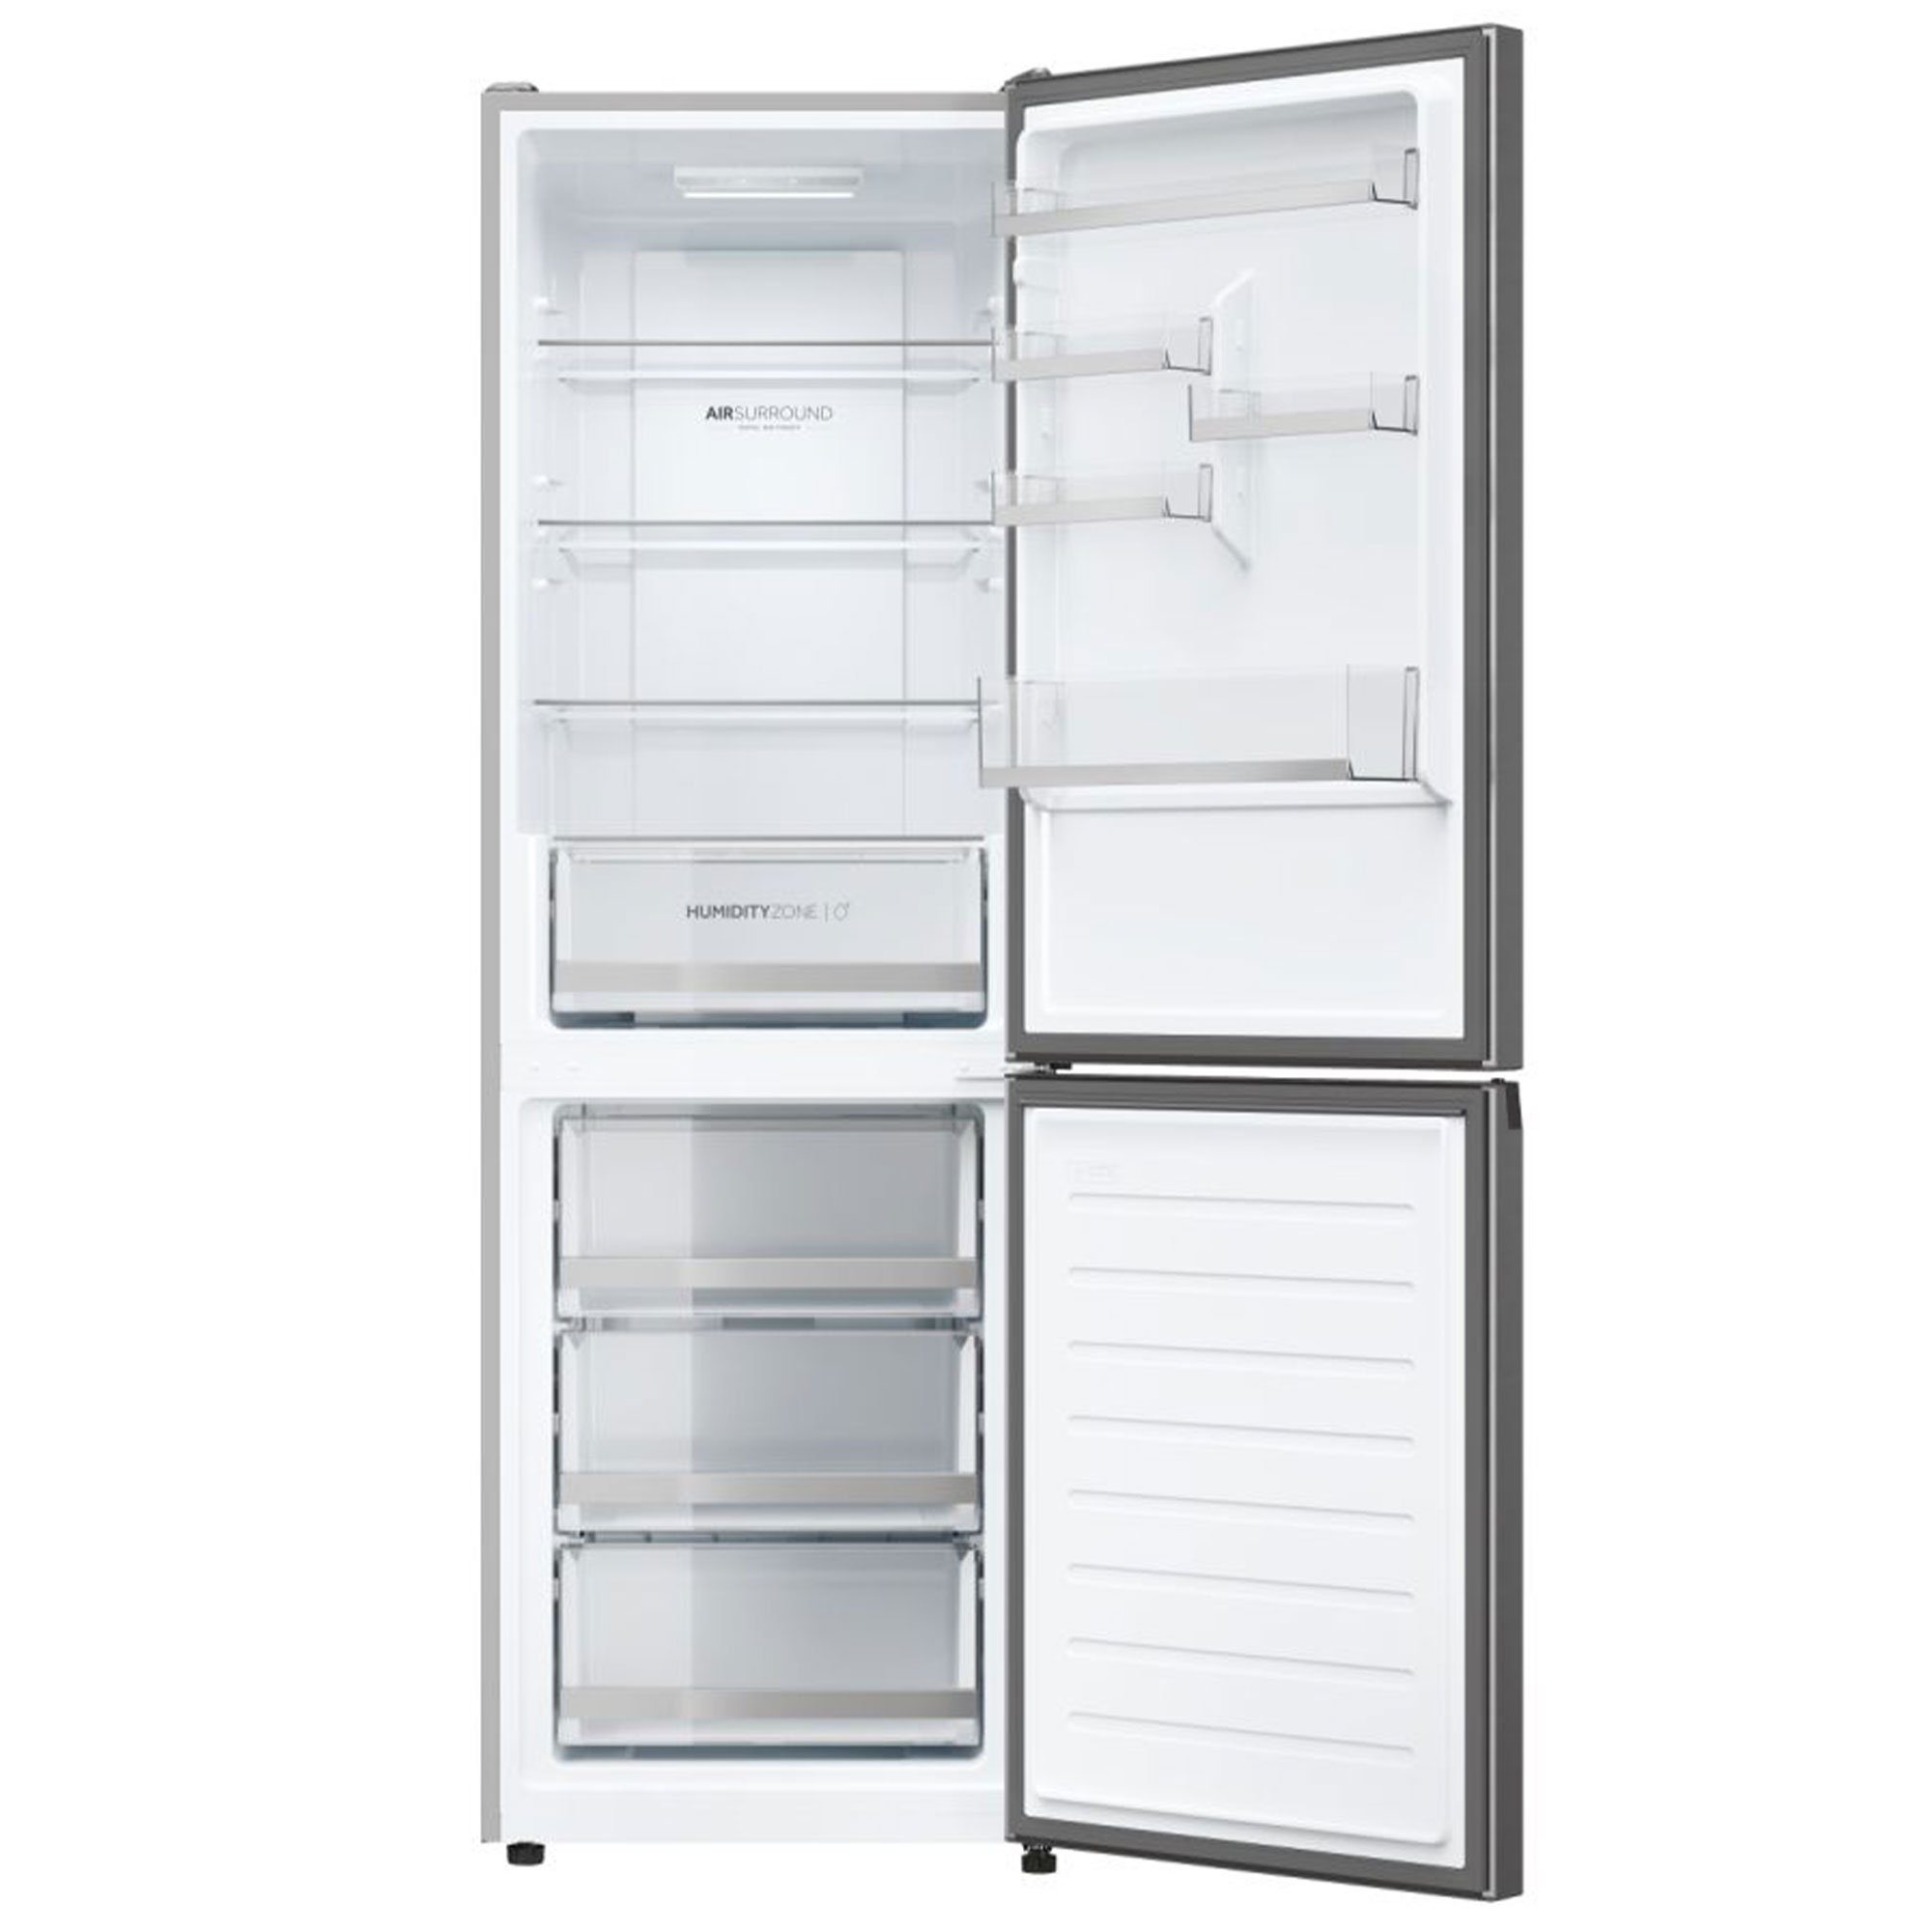 Haier Kühlschrank hoch, Künstliche Surround, Air breit, No cm Inox cm Edelstahlfront 185 59,5 Frost Total App hOn HDW1618DNPK, Intelligenz